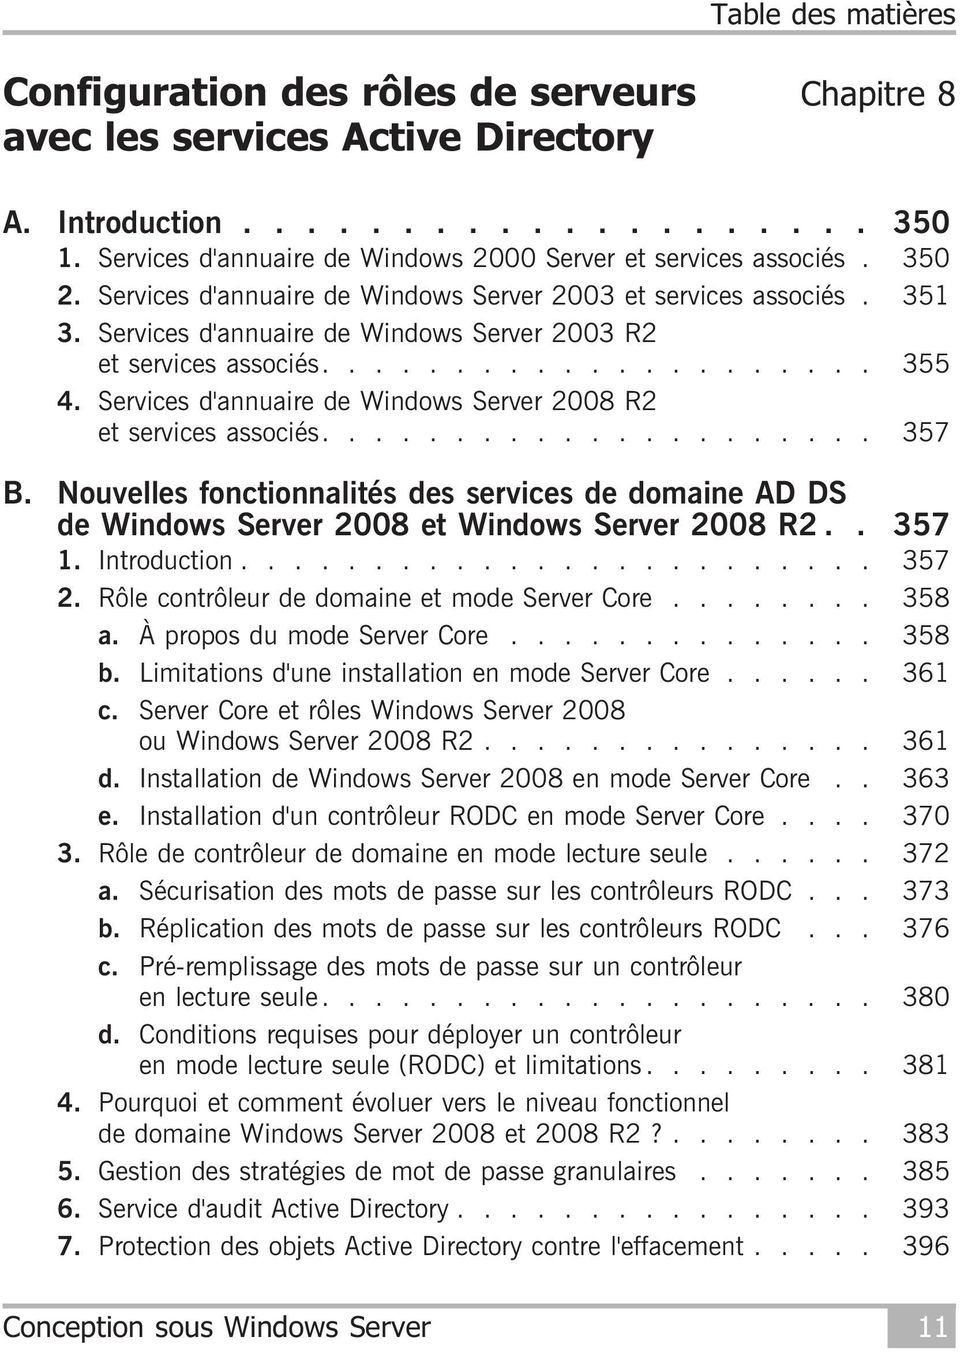 Services d'annuaire de Windows Server 2008 R2 et services associés..................... 357 B. Nouvelles fonctionnalités des services de domaine AD DS de Windows Server 2008 et Windows Server 2008 R2.